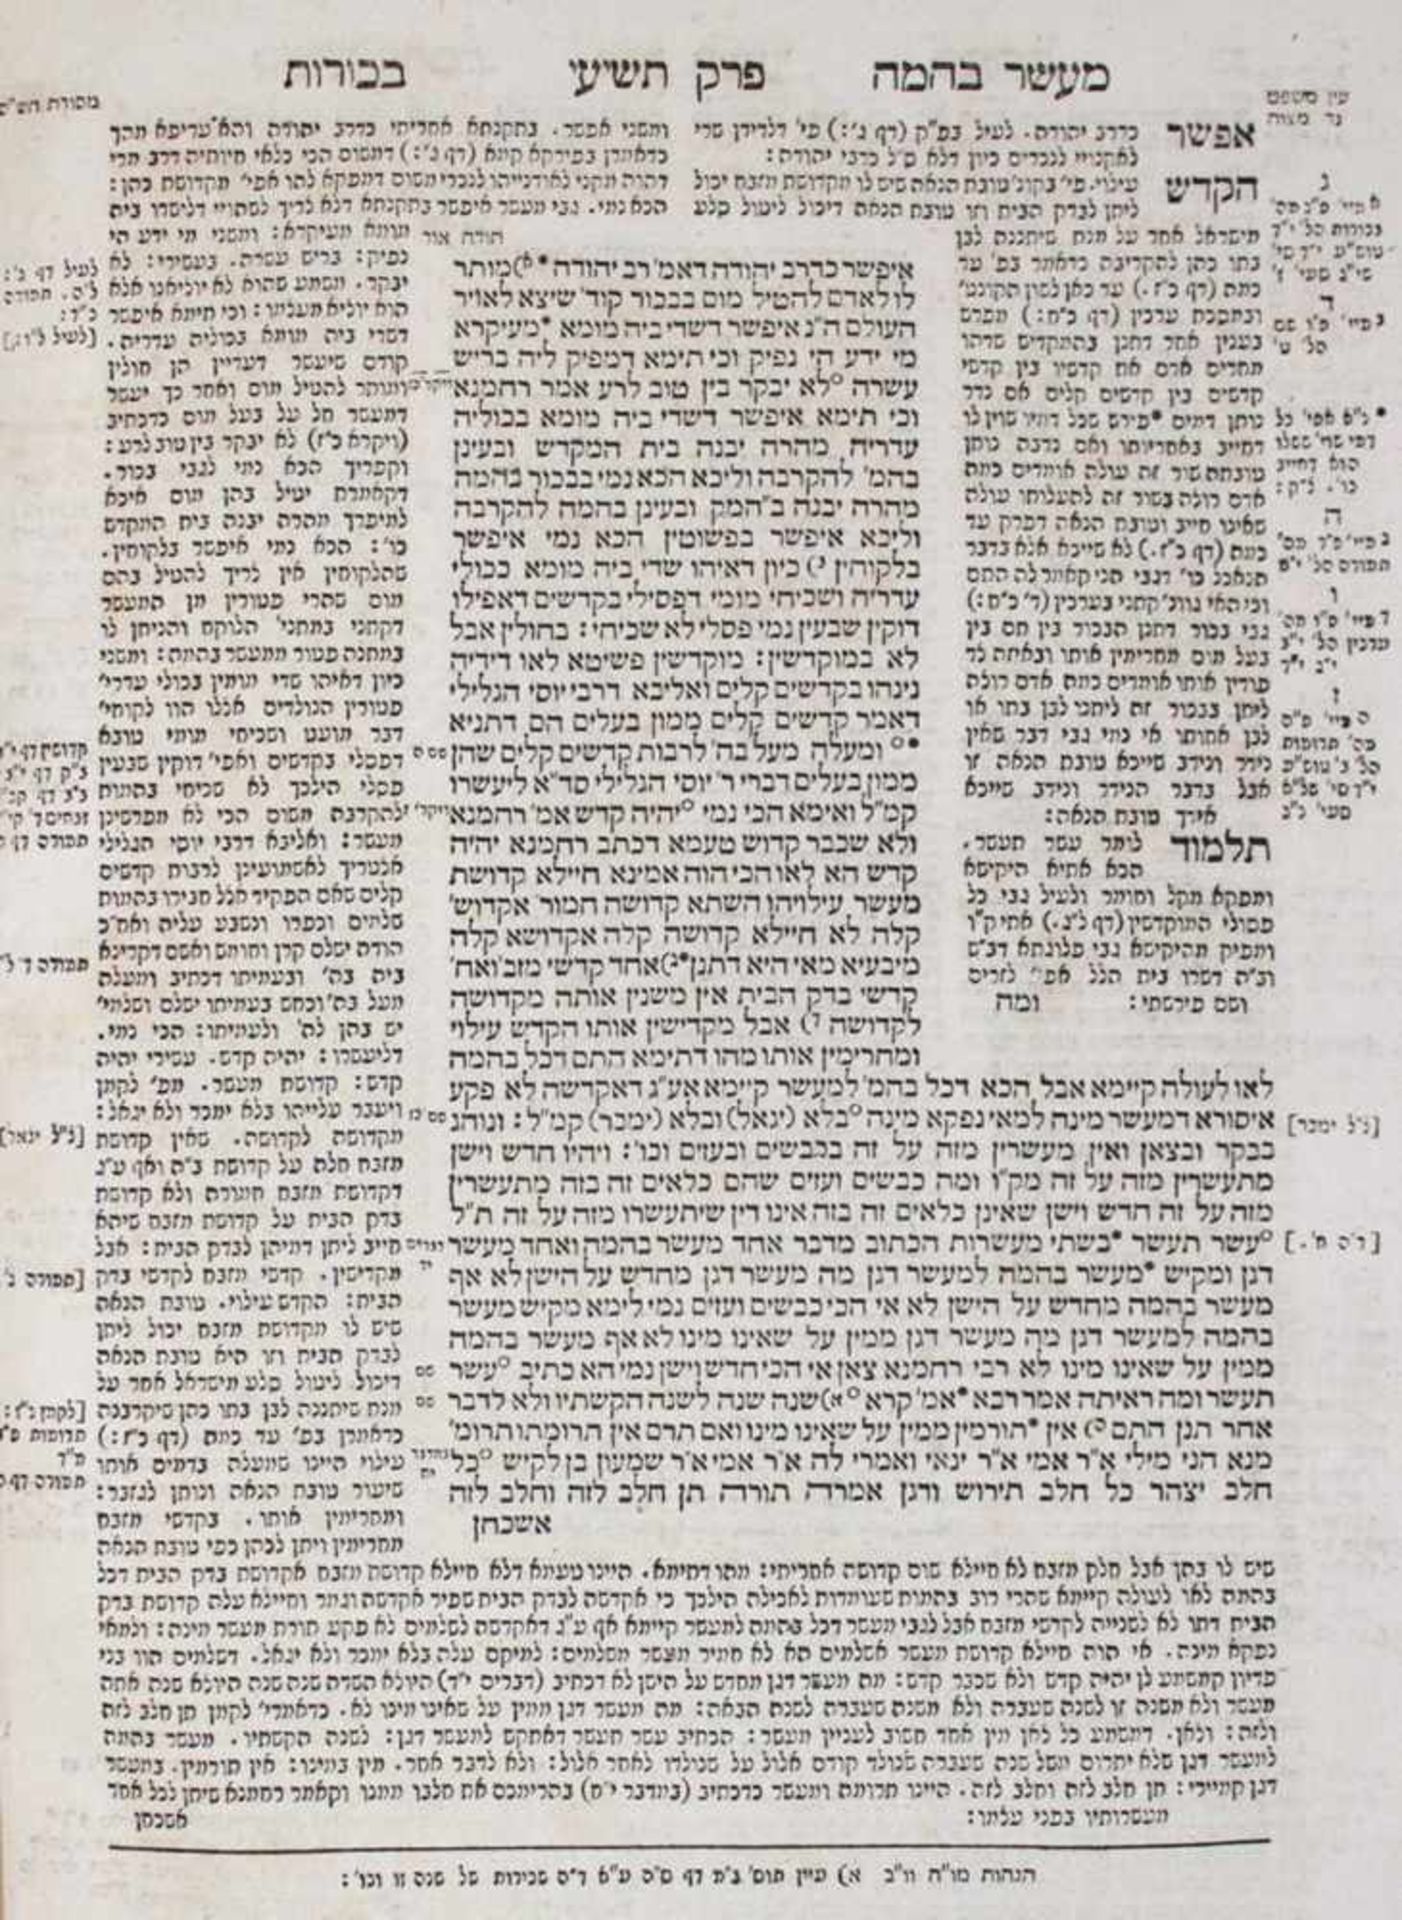 Talmud BavliTalmud Bavli (Babylonischer Talmud). 9 (von 12) Bde. Wien, Anton Edler vonTalmu